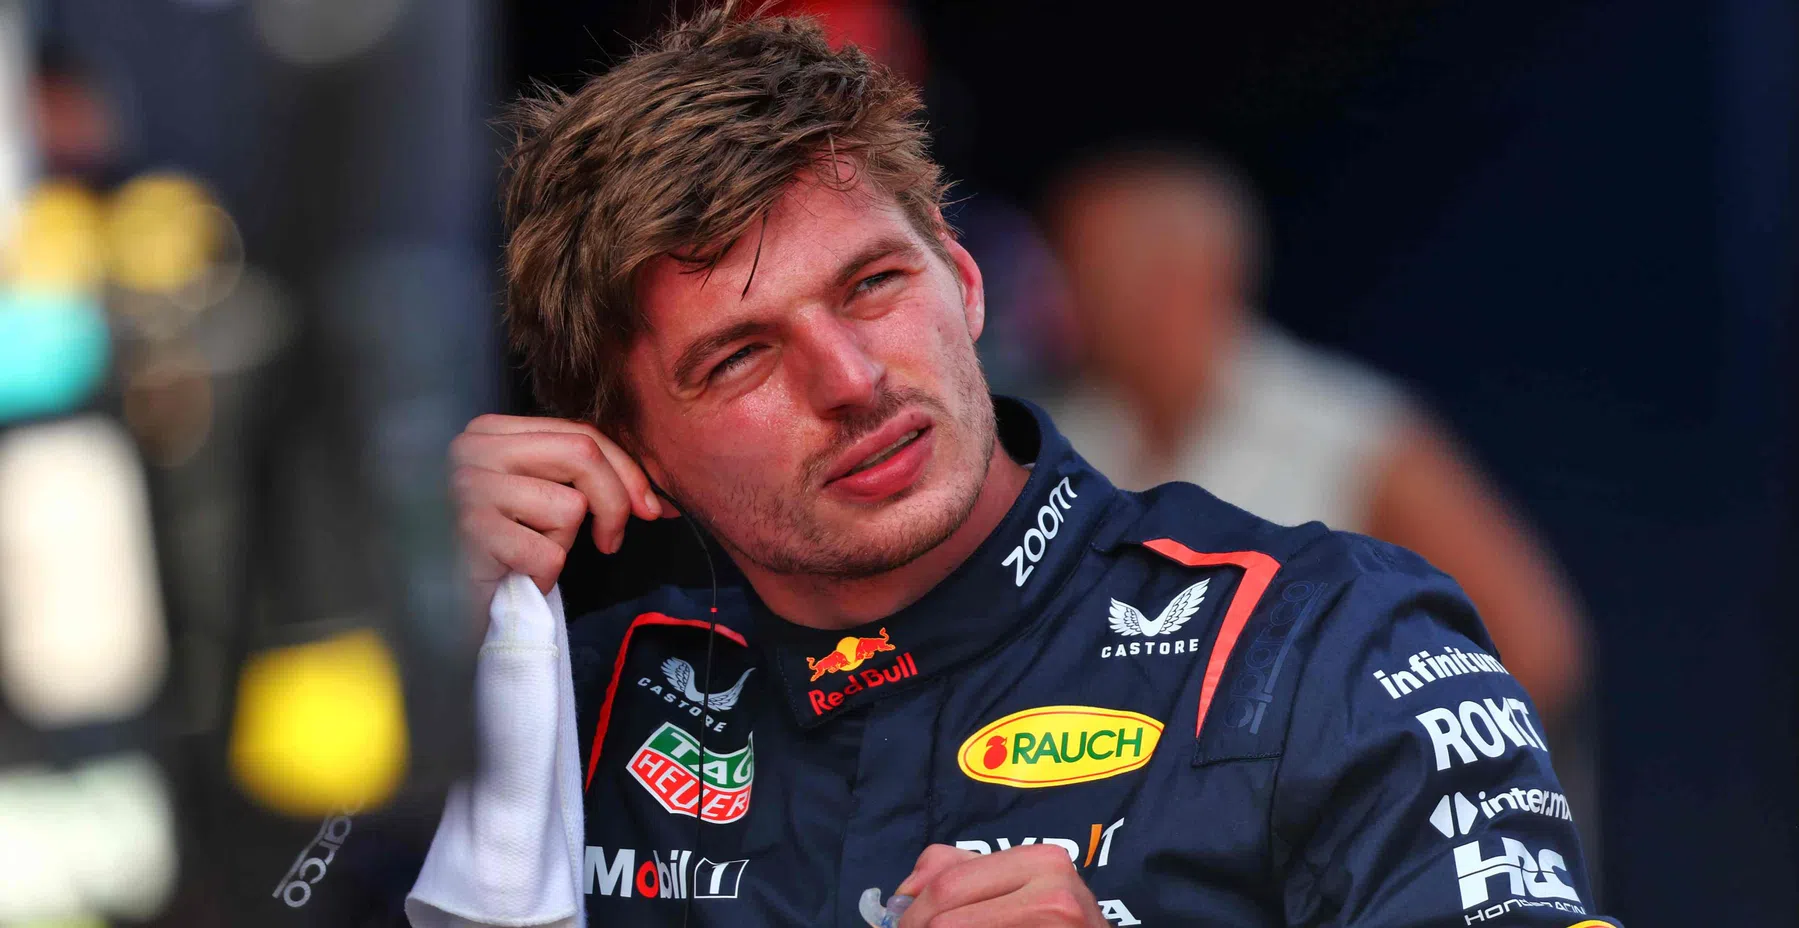 Gli analisti di Sky puntano su Verstappen dopo l'incidente di Norris